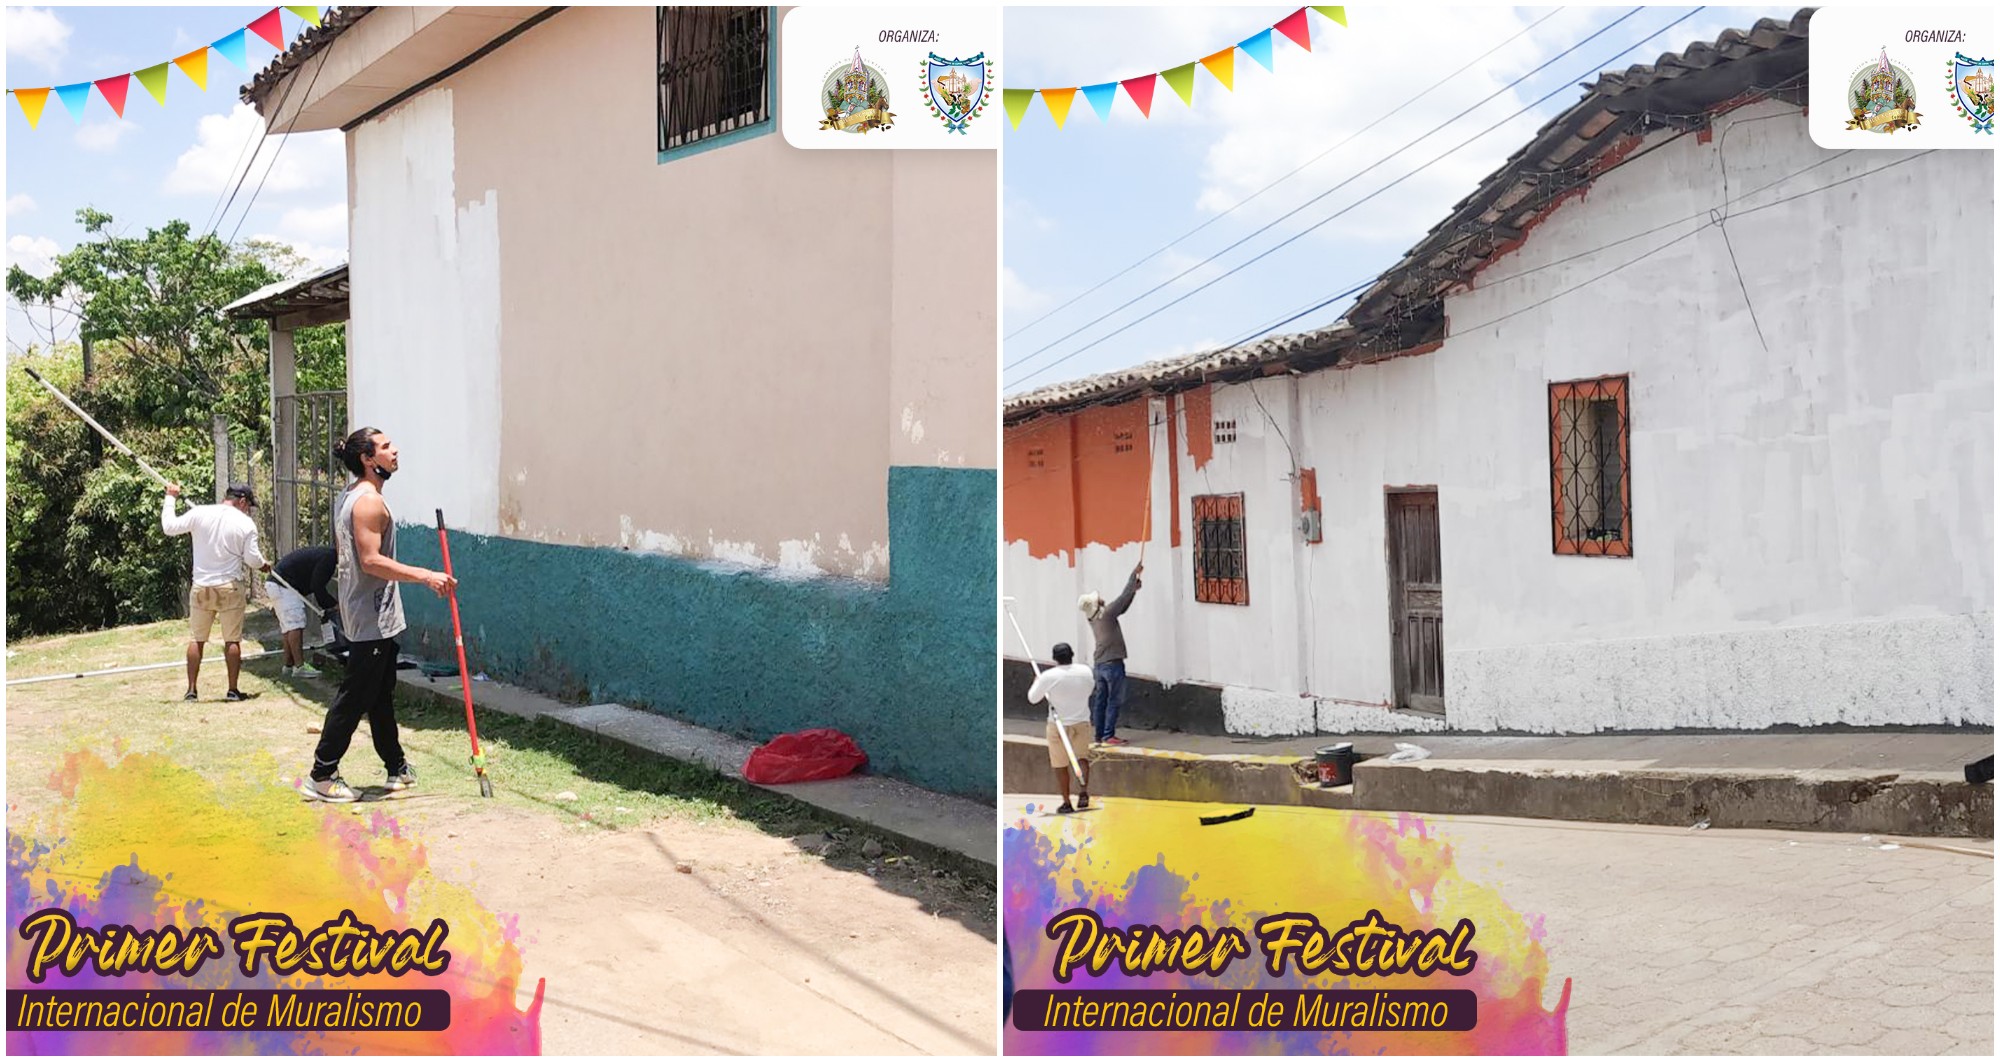 Hoy inicia el Primer Festival Internacional de Muralismo en Honduras